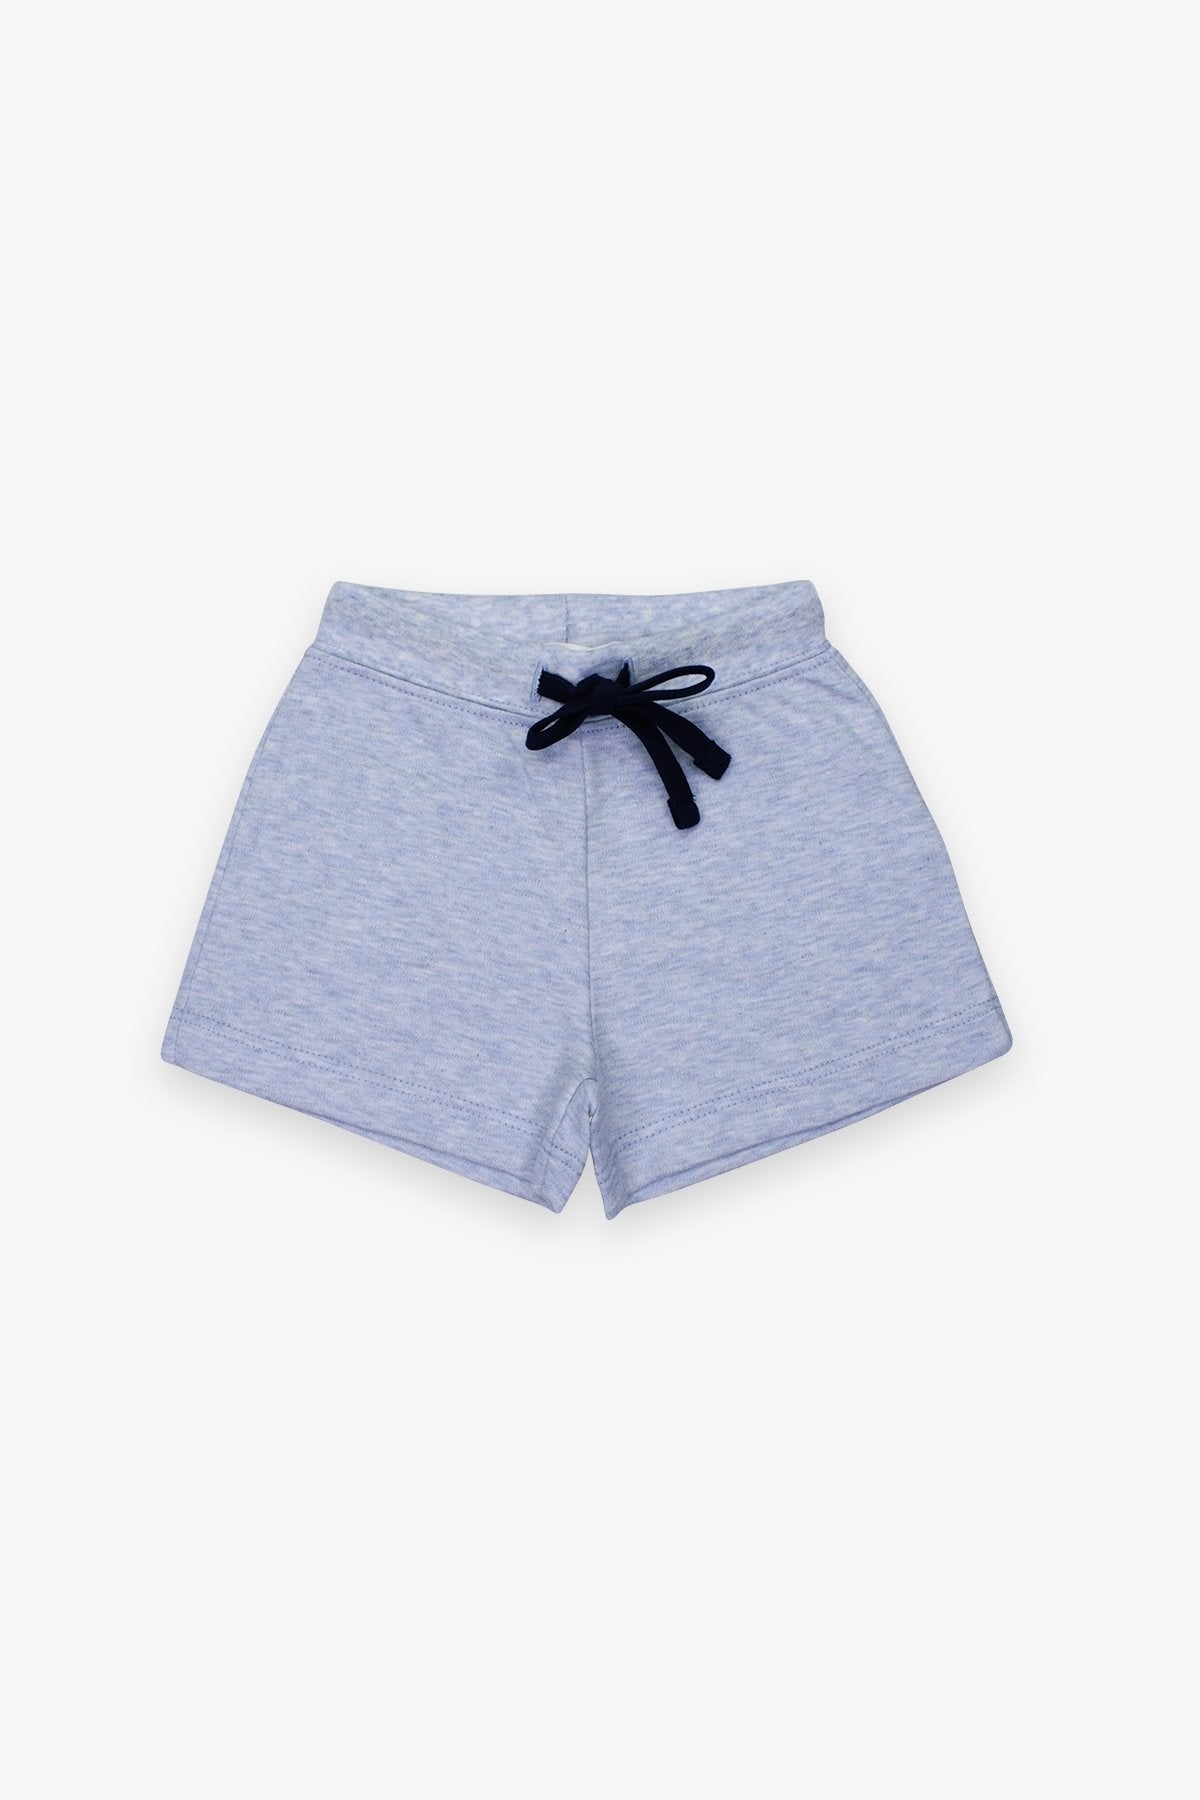 Pima Colors Shorts in Blue - shop-olivia.com